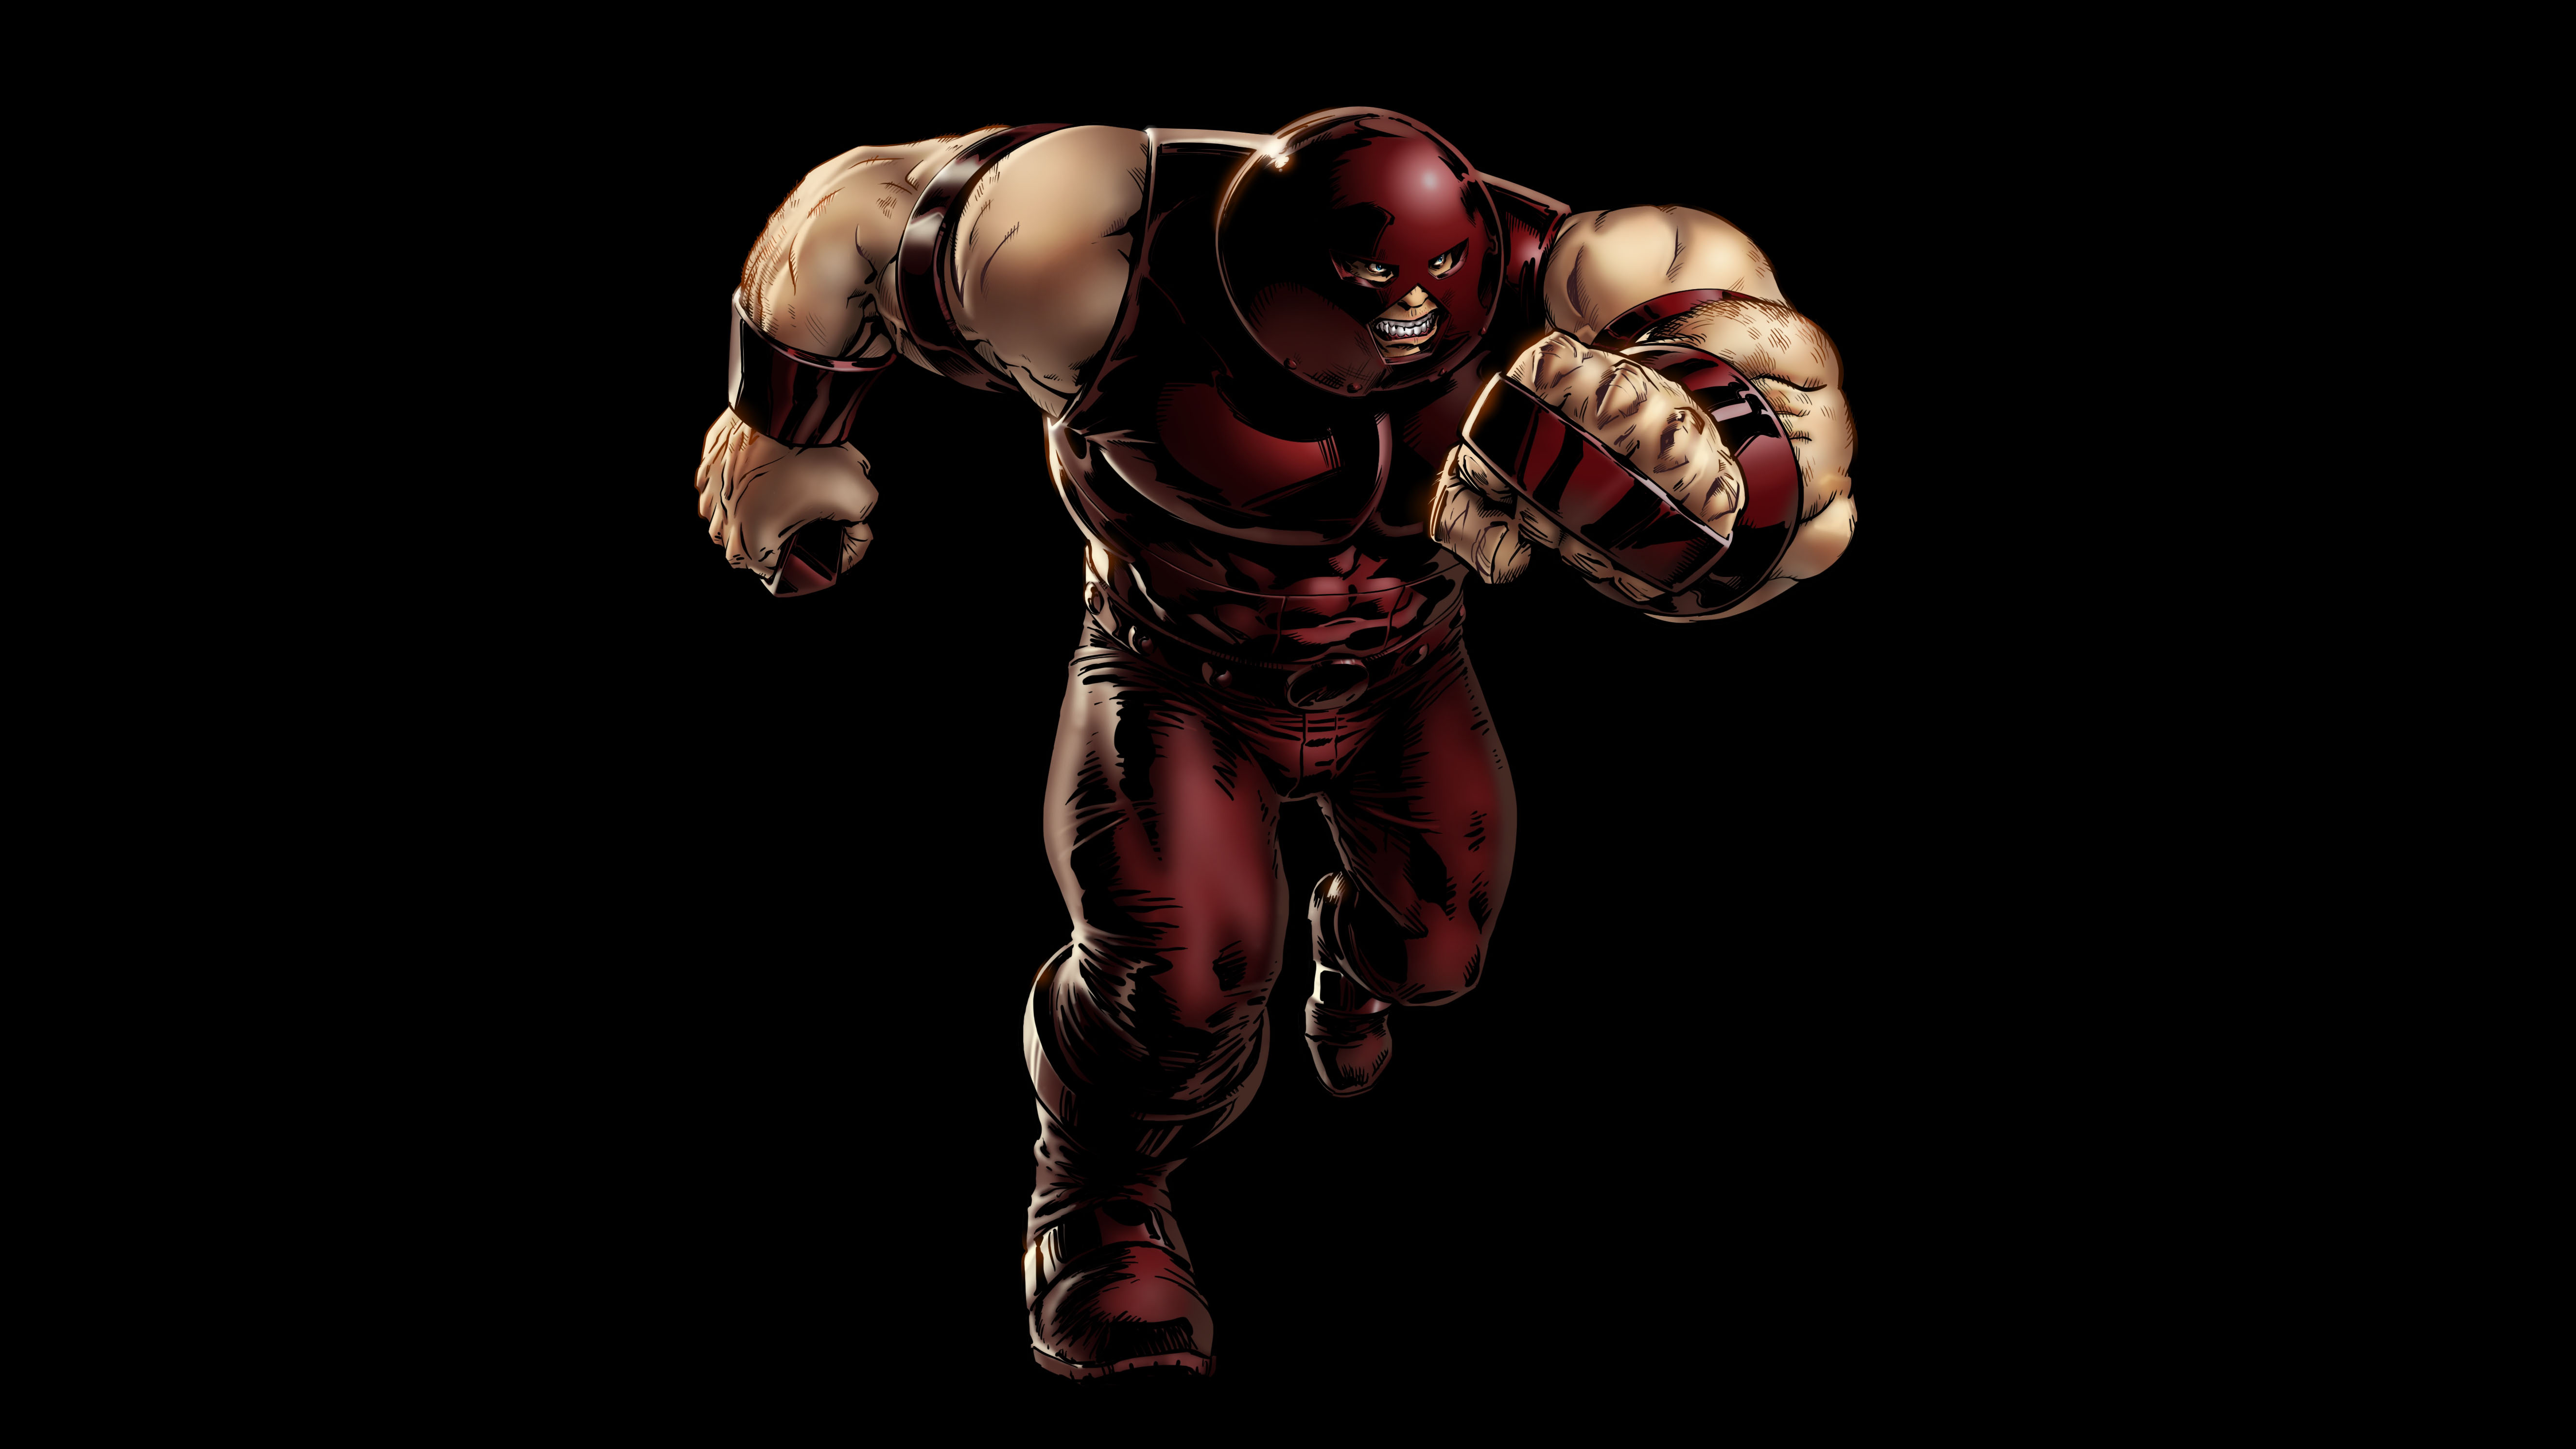 Juggernaut | Juggernaut marvel, Marvel dc comics, Marvel superheroes